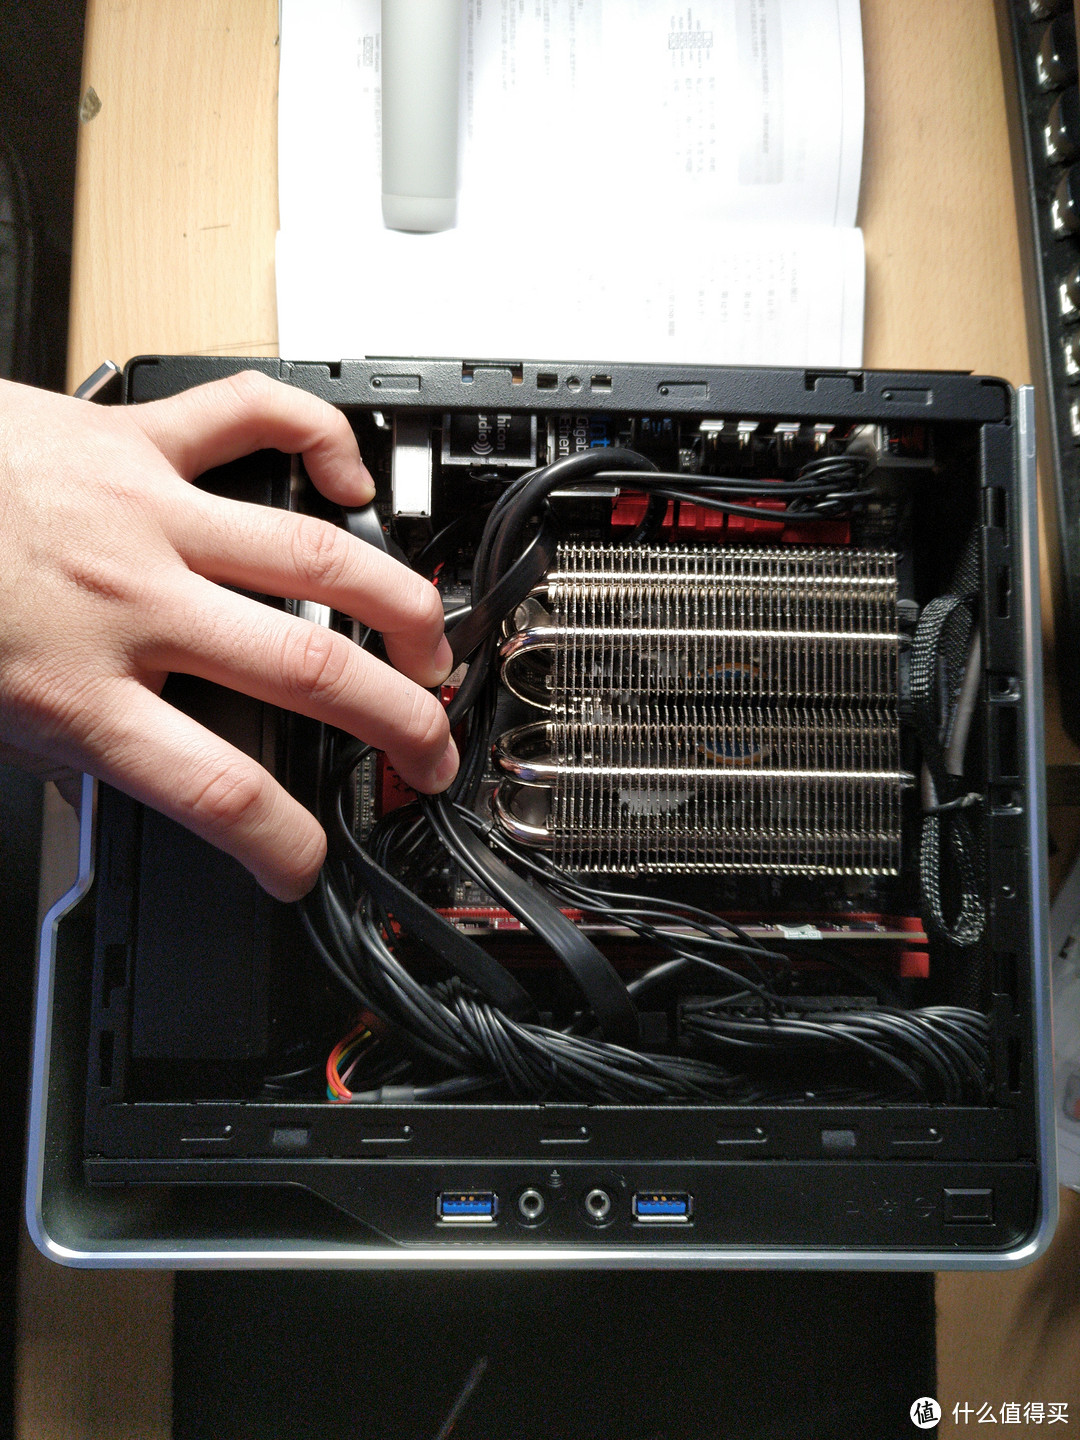 超小AM4 ITX 核显主机—IN WIN 迎广 肖邦 银色 迷你机箱装机体验